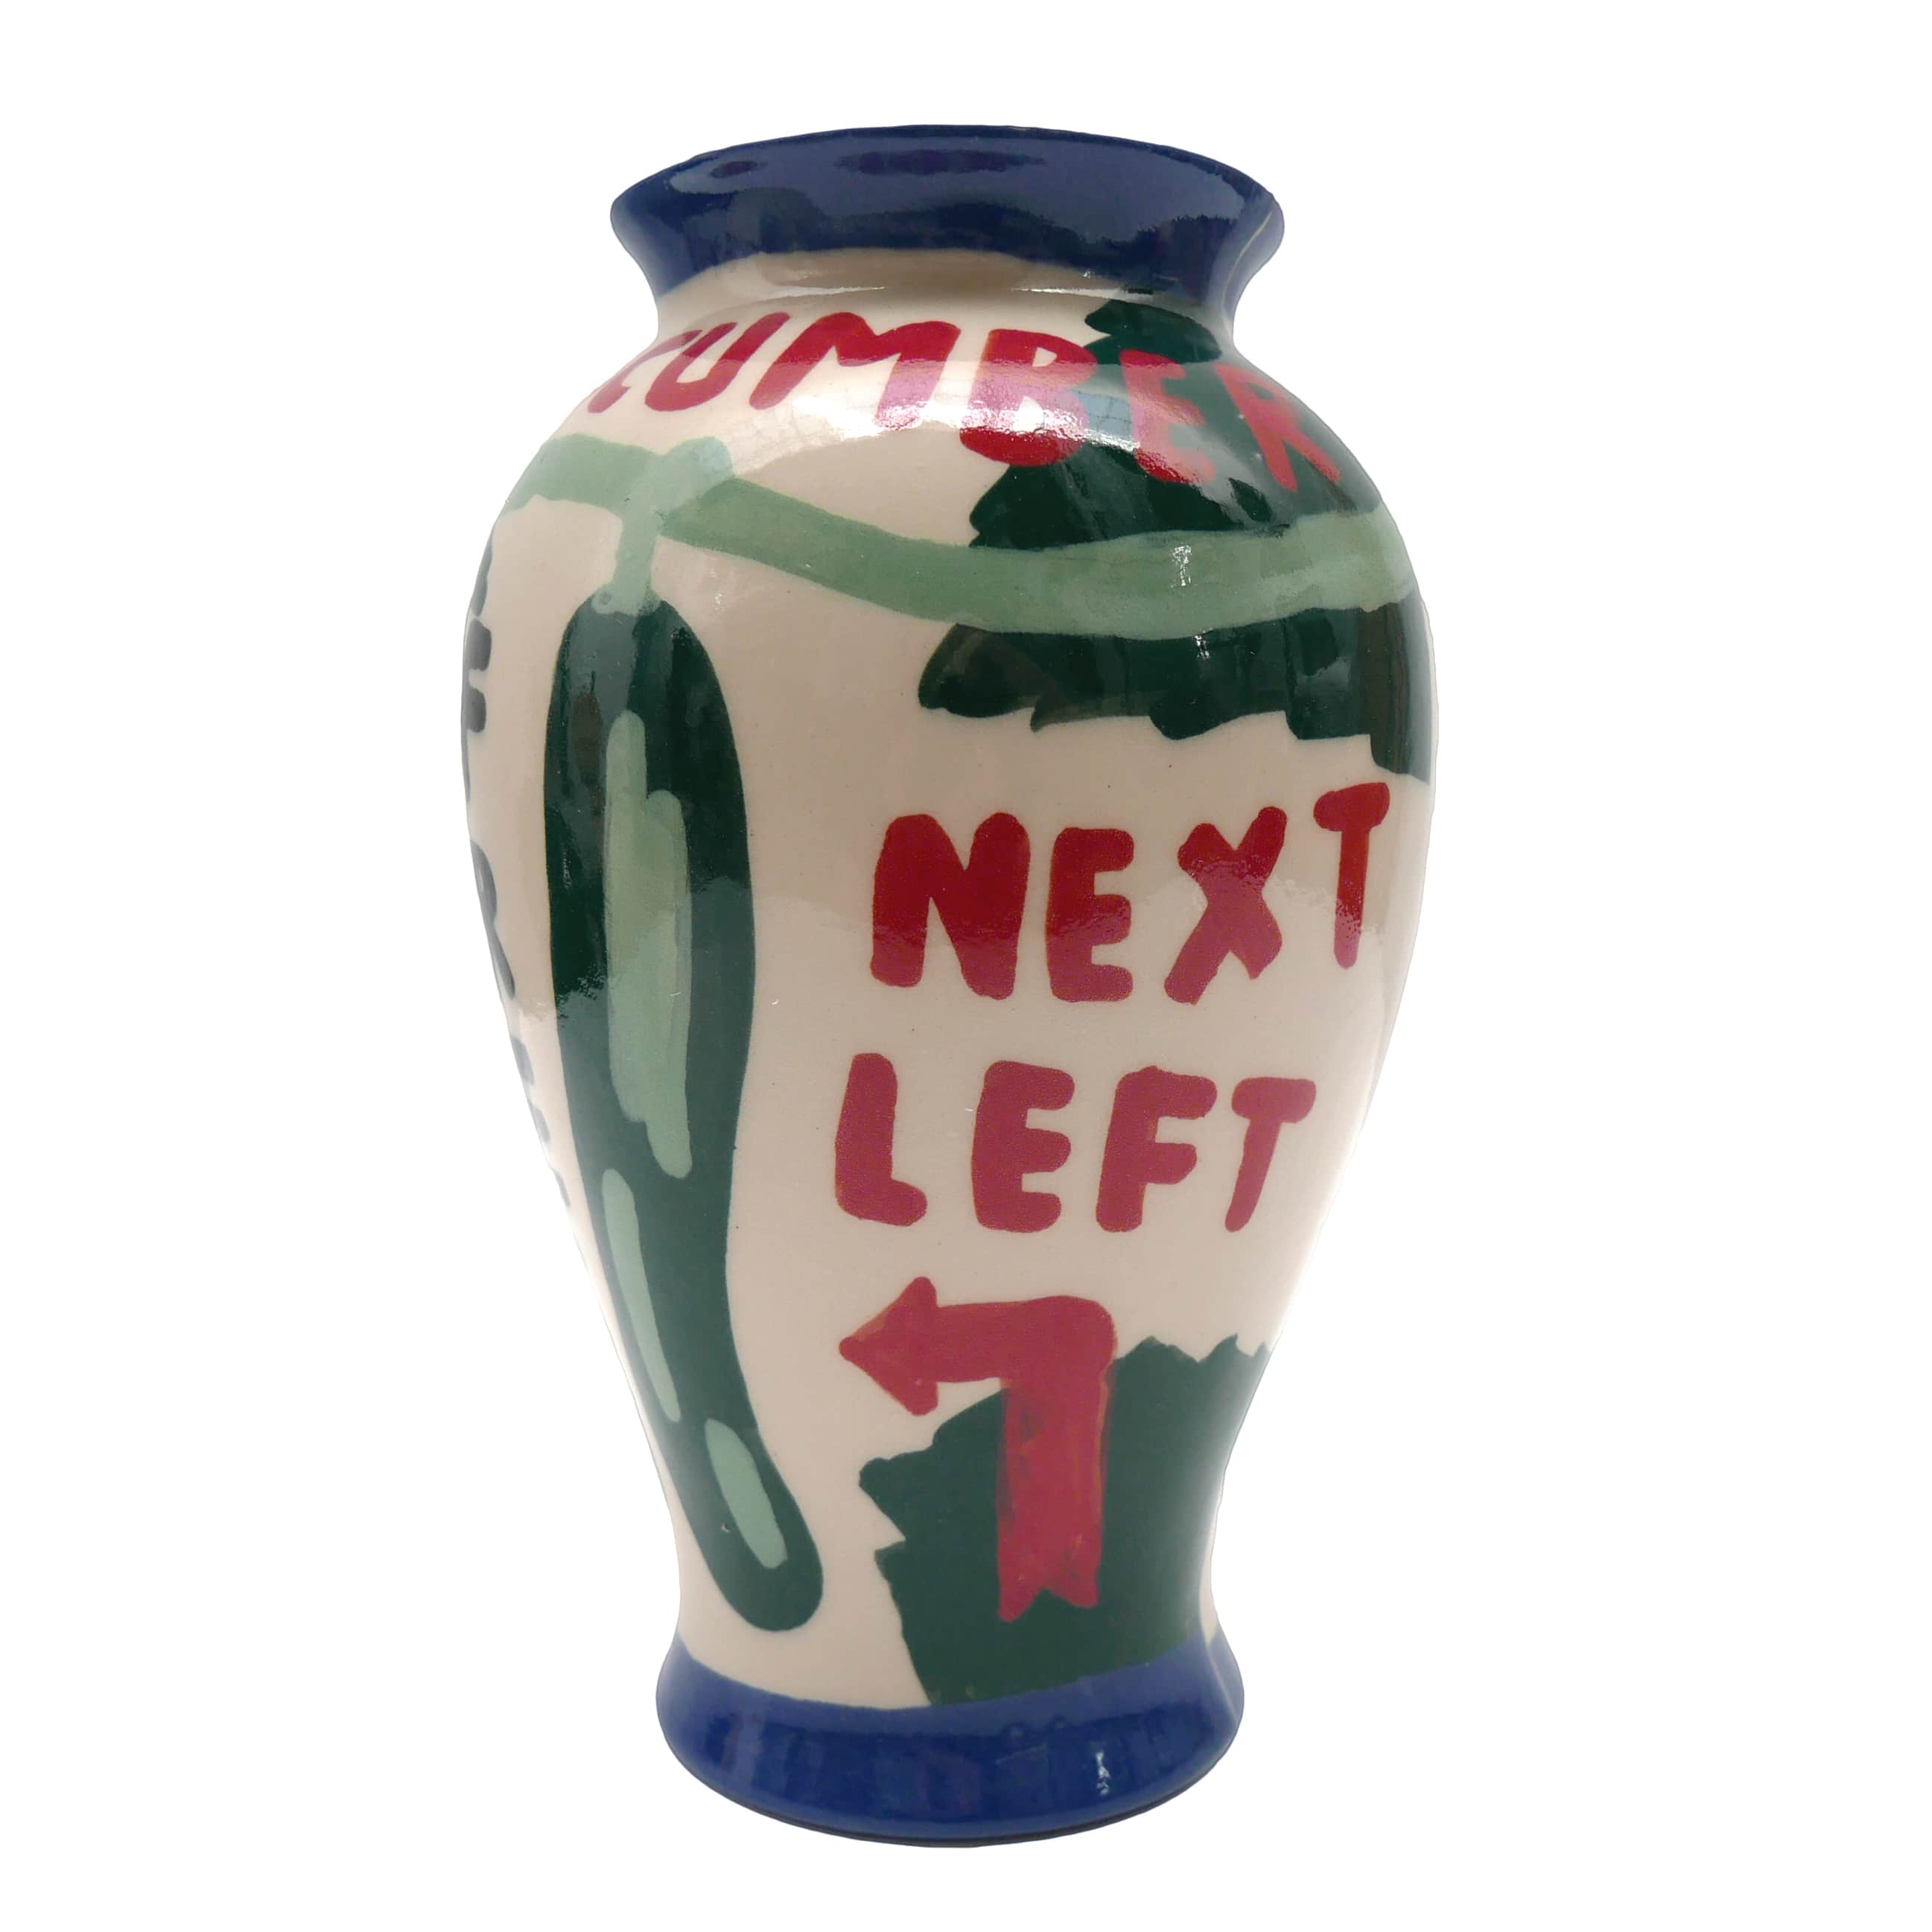 "Next right, next left" Ceramic